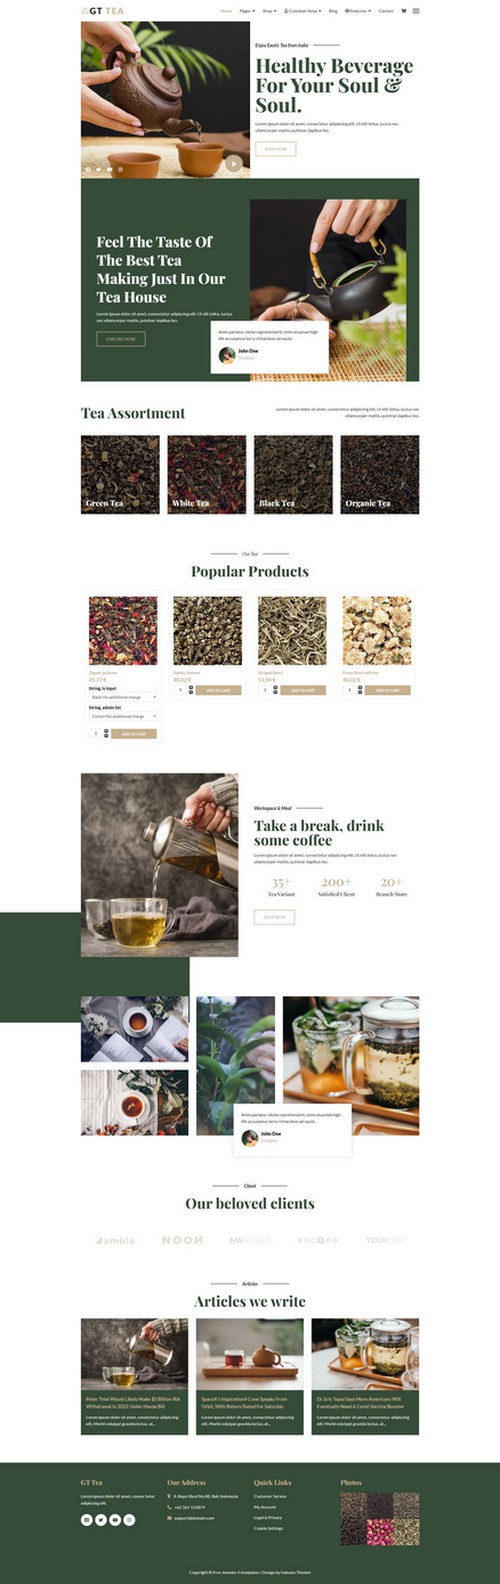 GT Tea - Responsive Online Tea Shop Joomla 4 Template